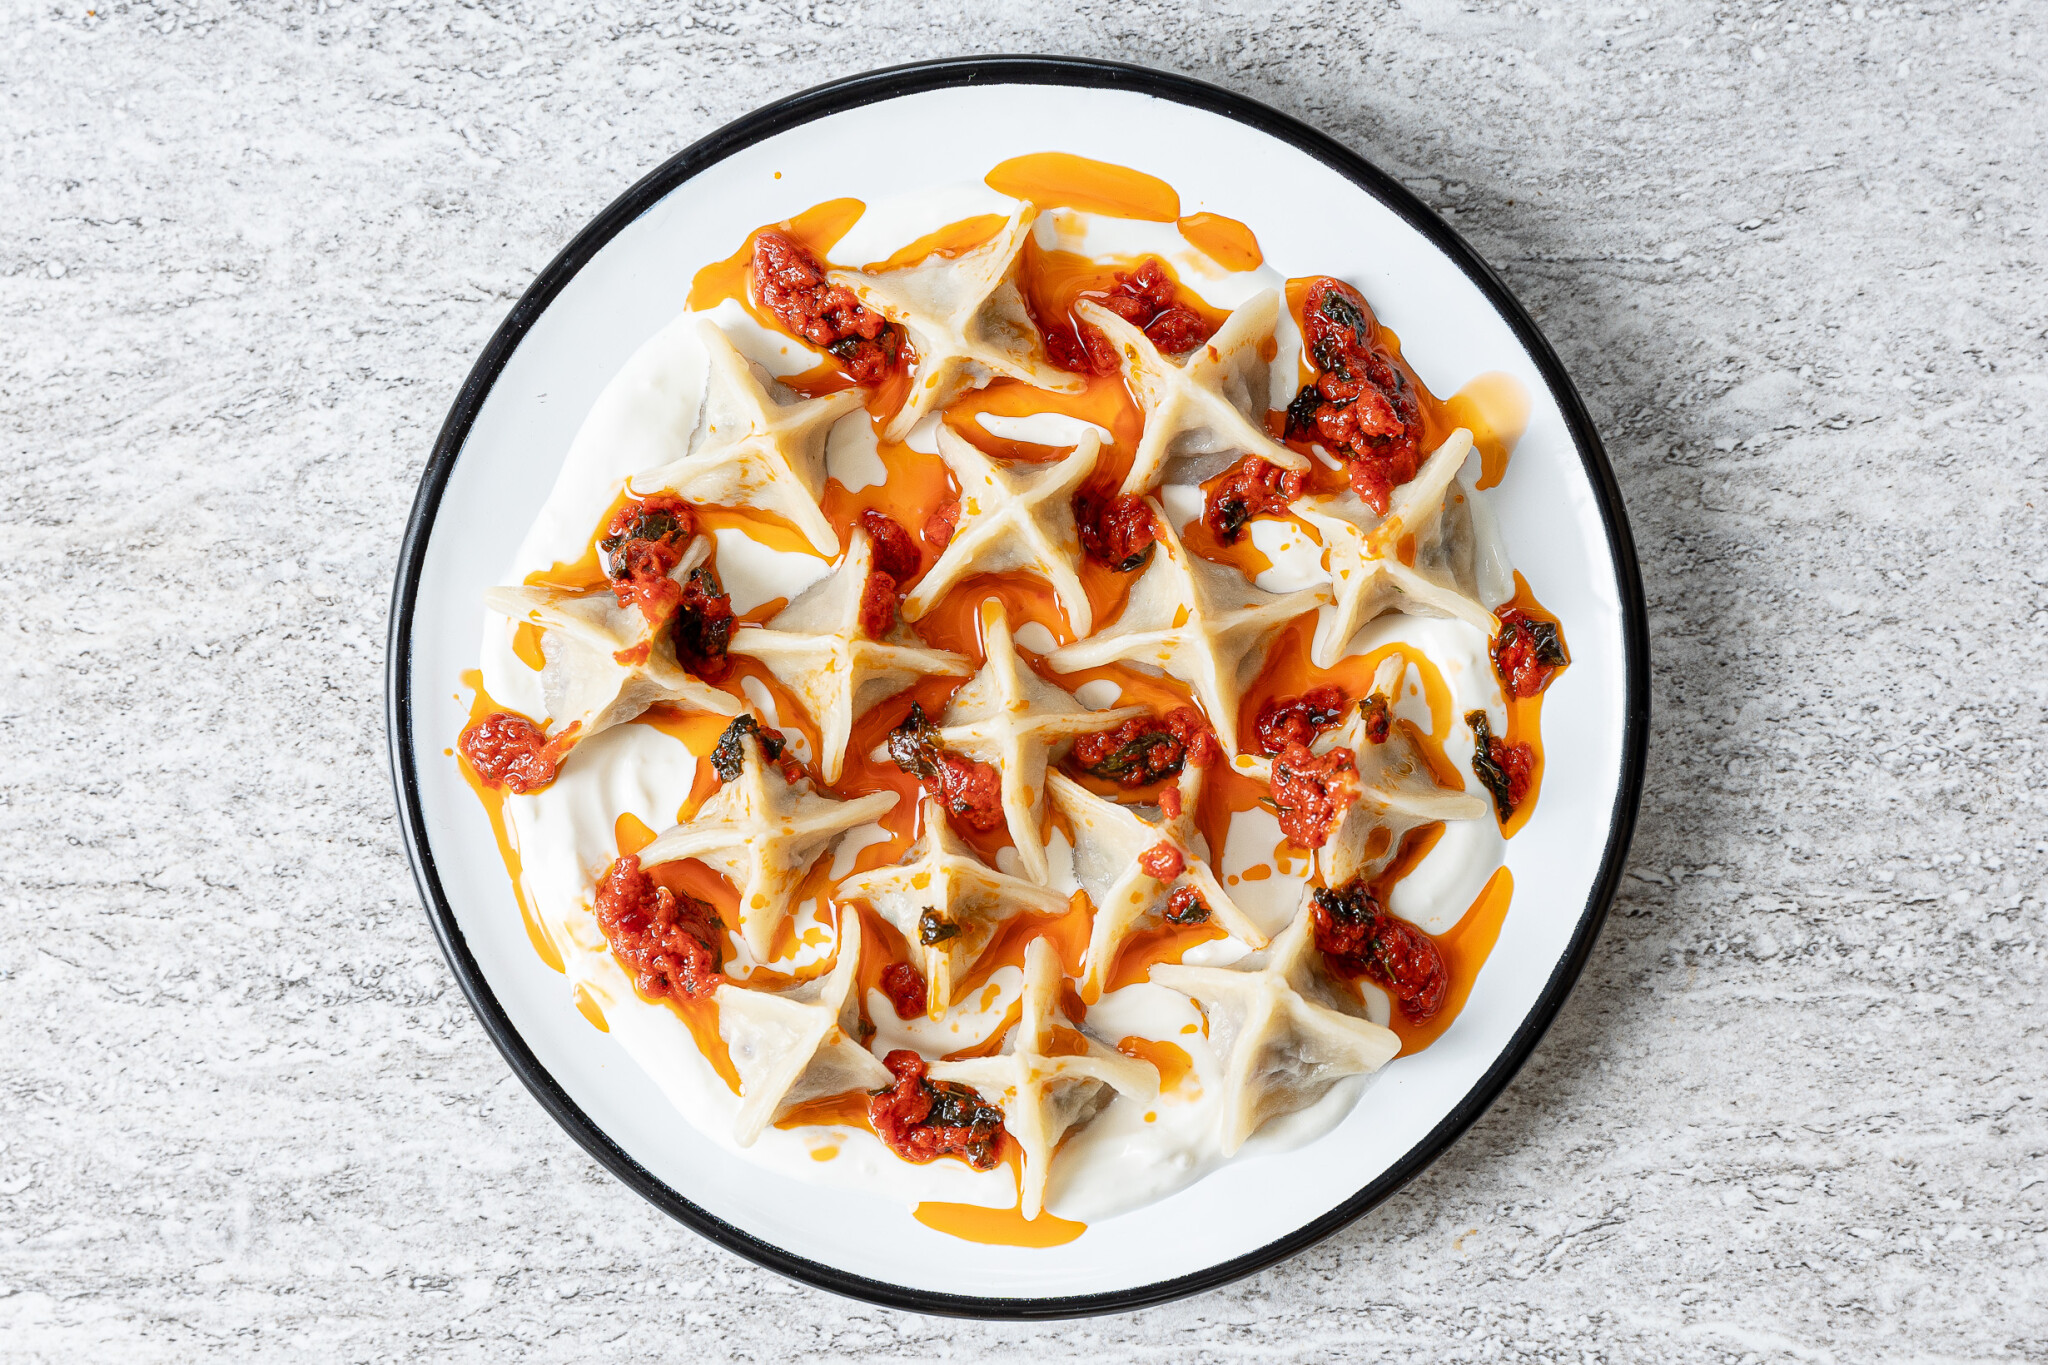 Origami v kuchyni: ochutnejte turecké knedlíčky manti s česnekovým jogurtem a božským chilli máslem